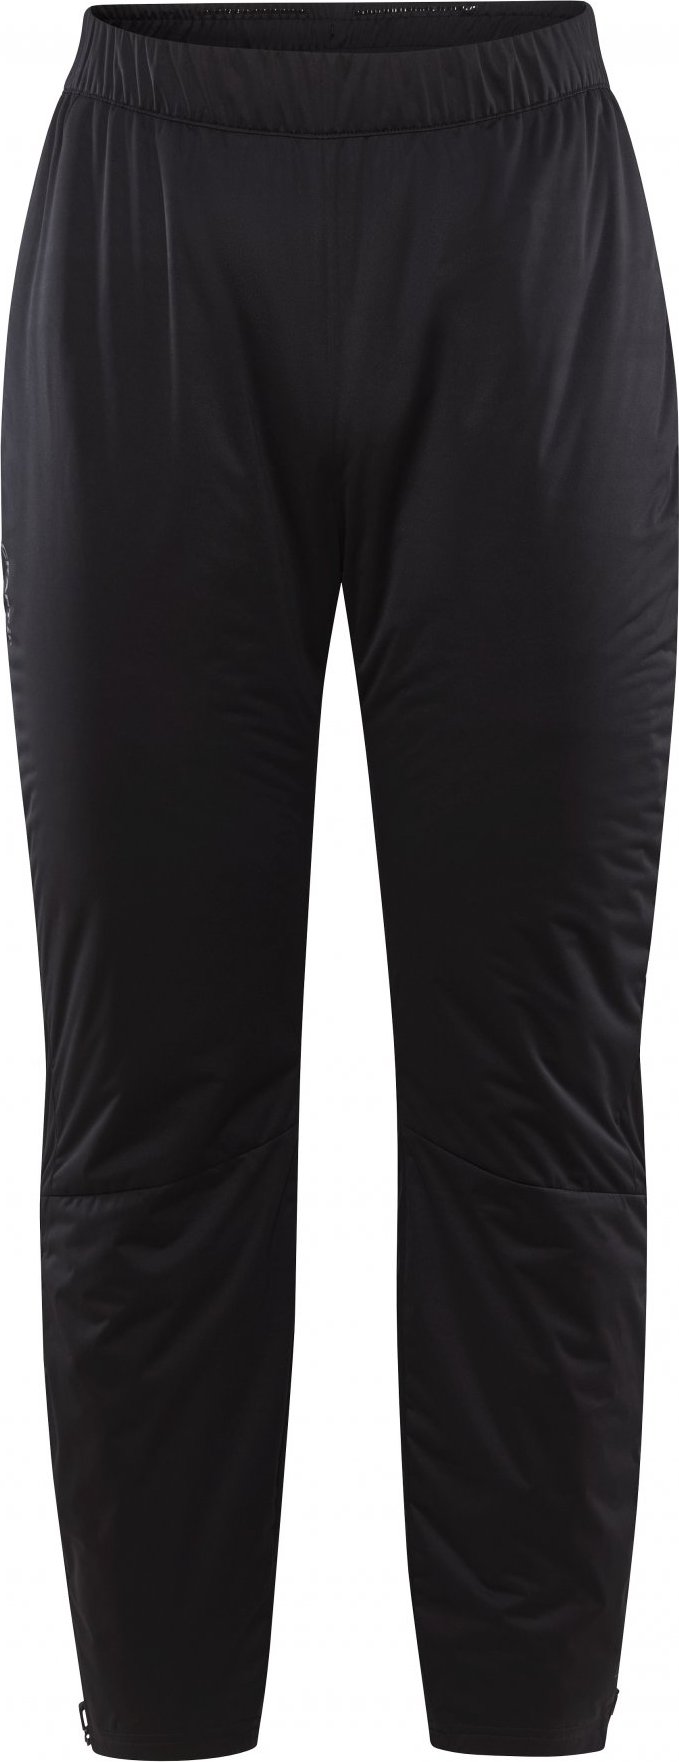 Dámské zateplené kalhoty CRAFT Core Nordic Training Warm černé Velikost: L